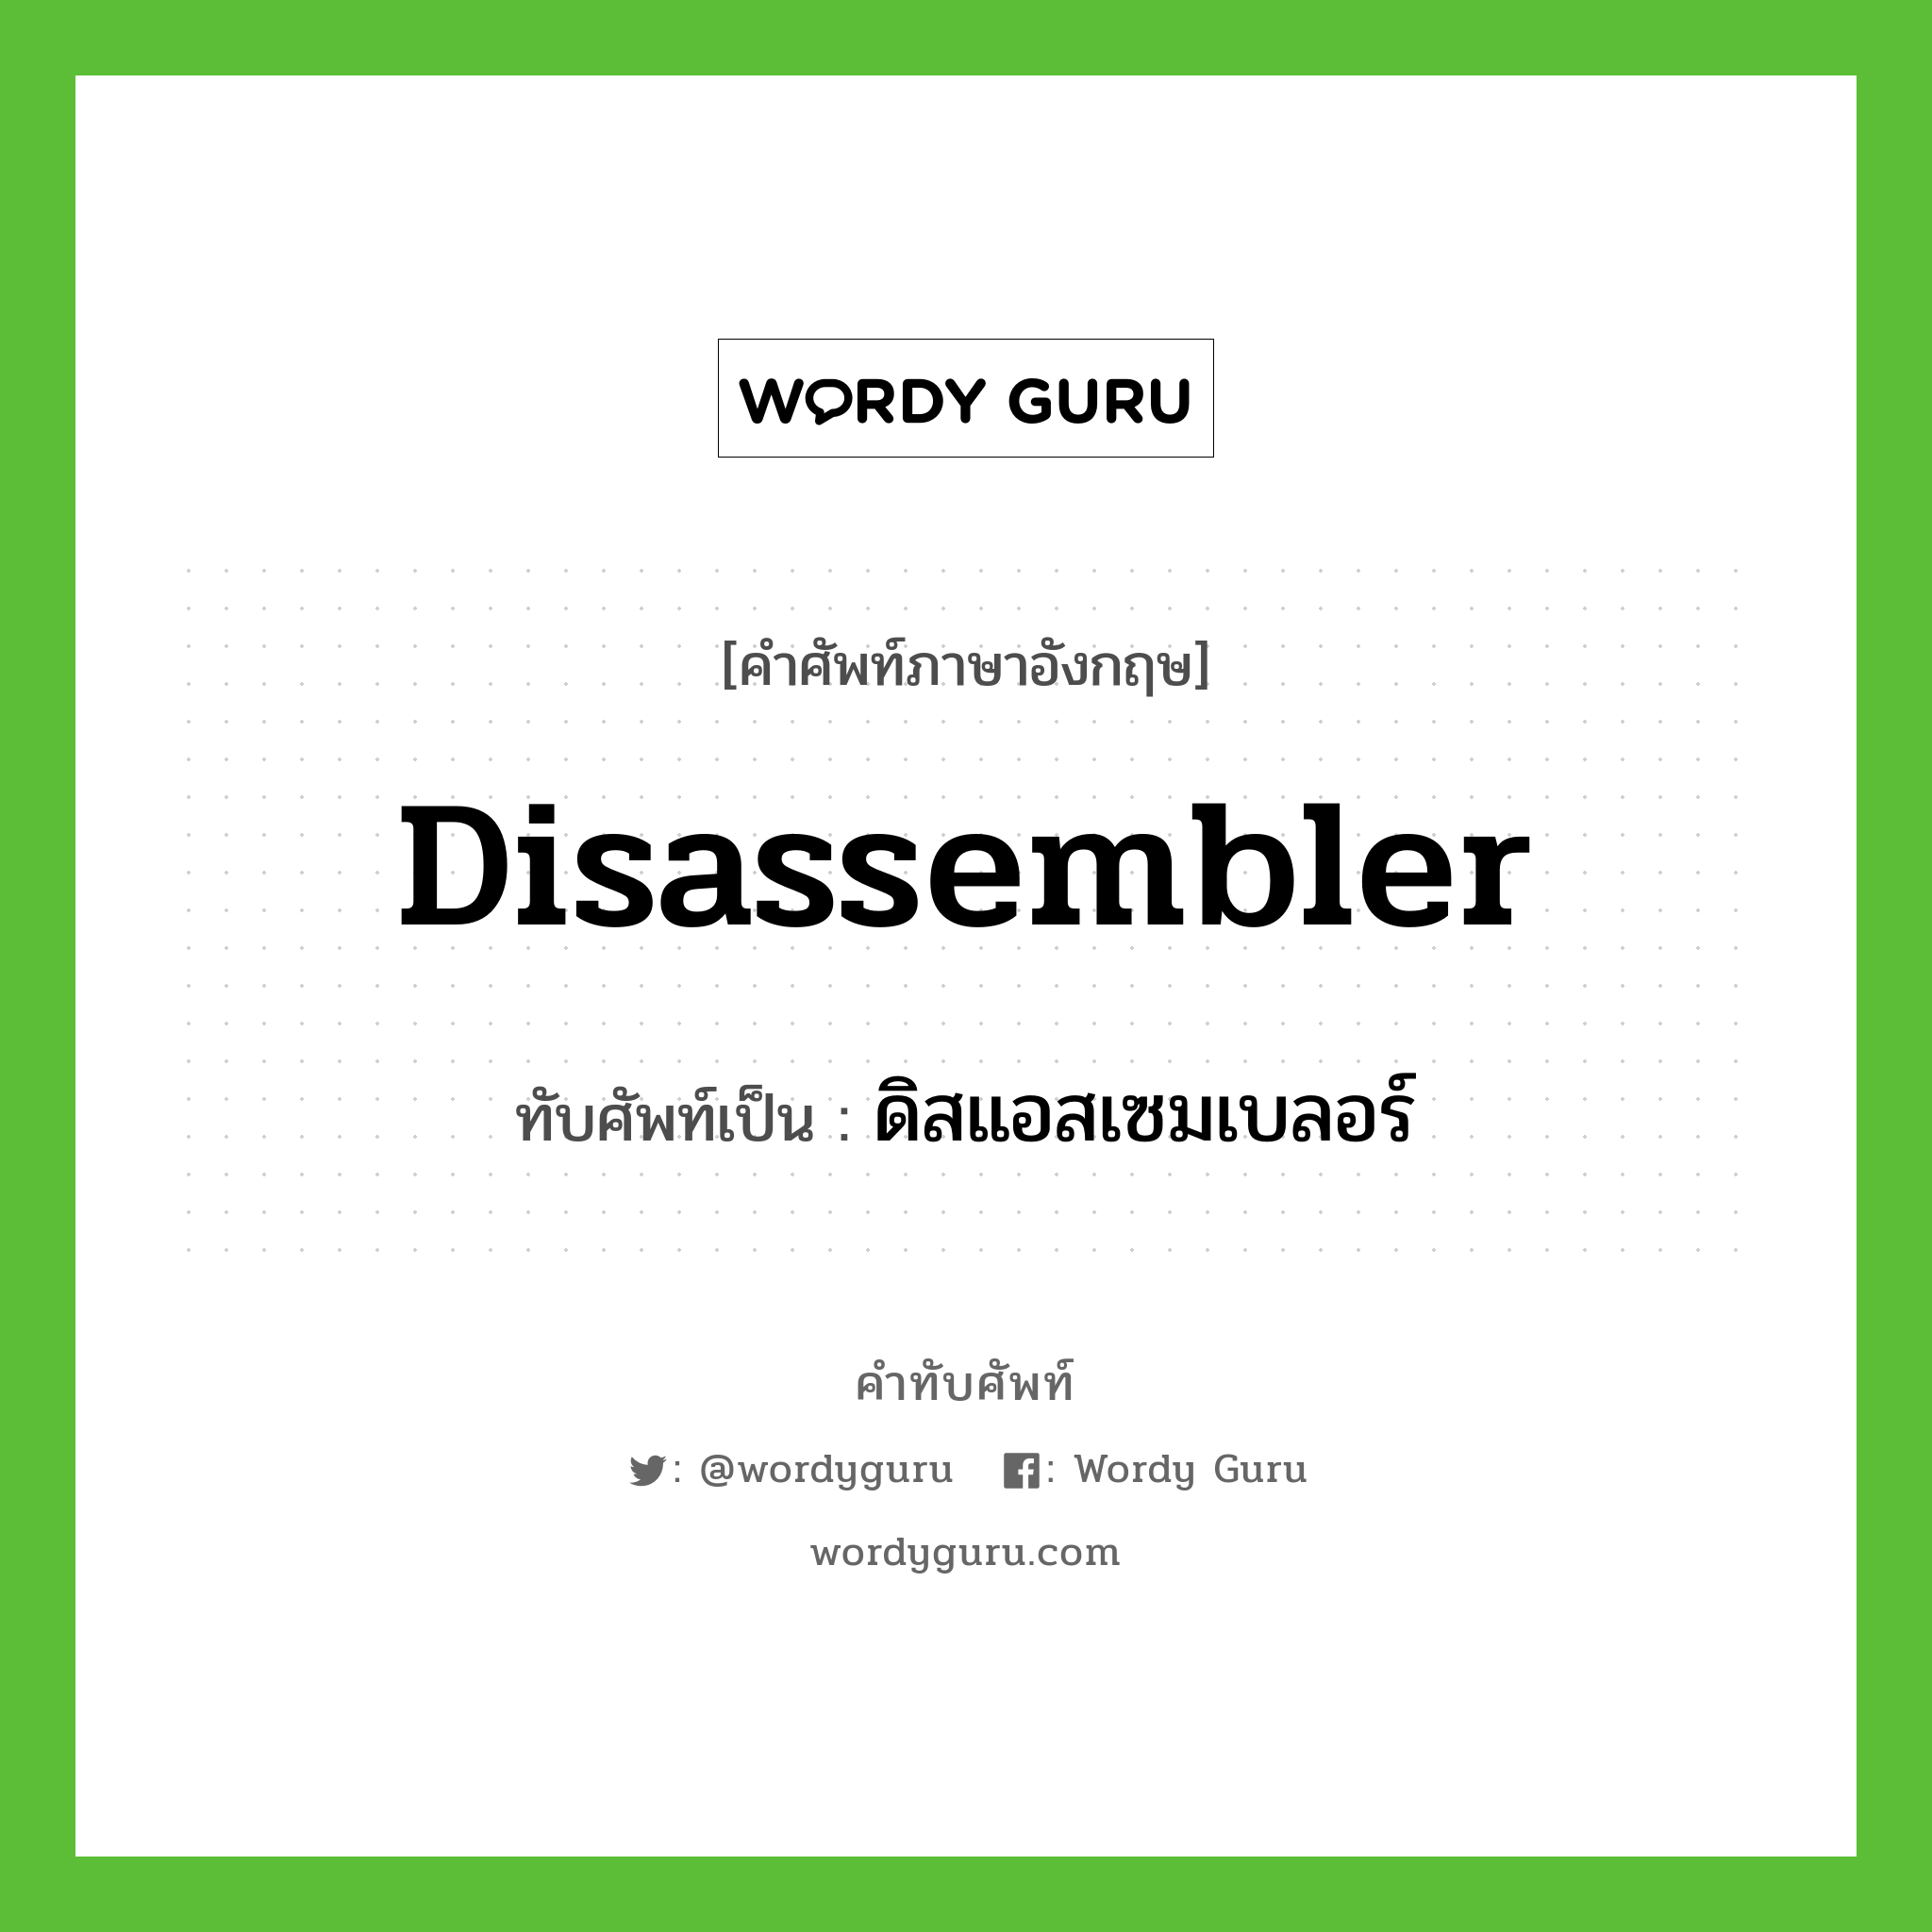 disassembler เขียนเป็นคำไทยว่าอะไร?, คำศัพท์ภาษาอังกฤษ disassembler ทับศัพท์เป็น ดิสแอสเซมเบลอร์